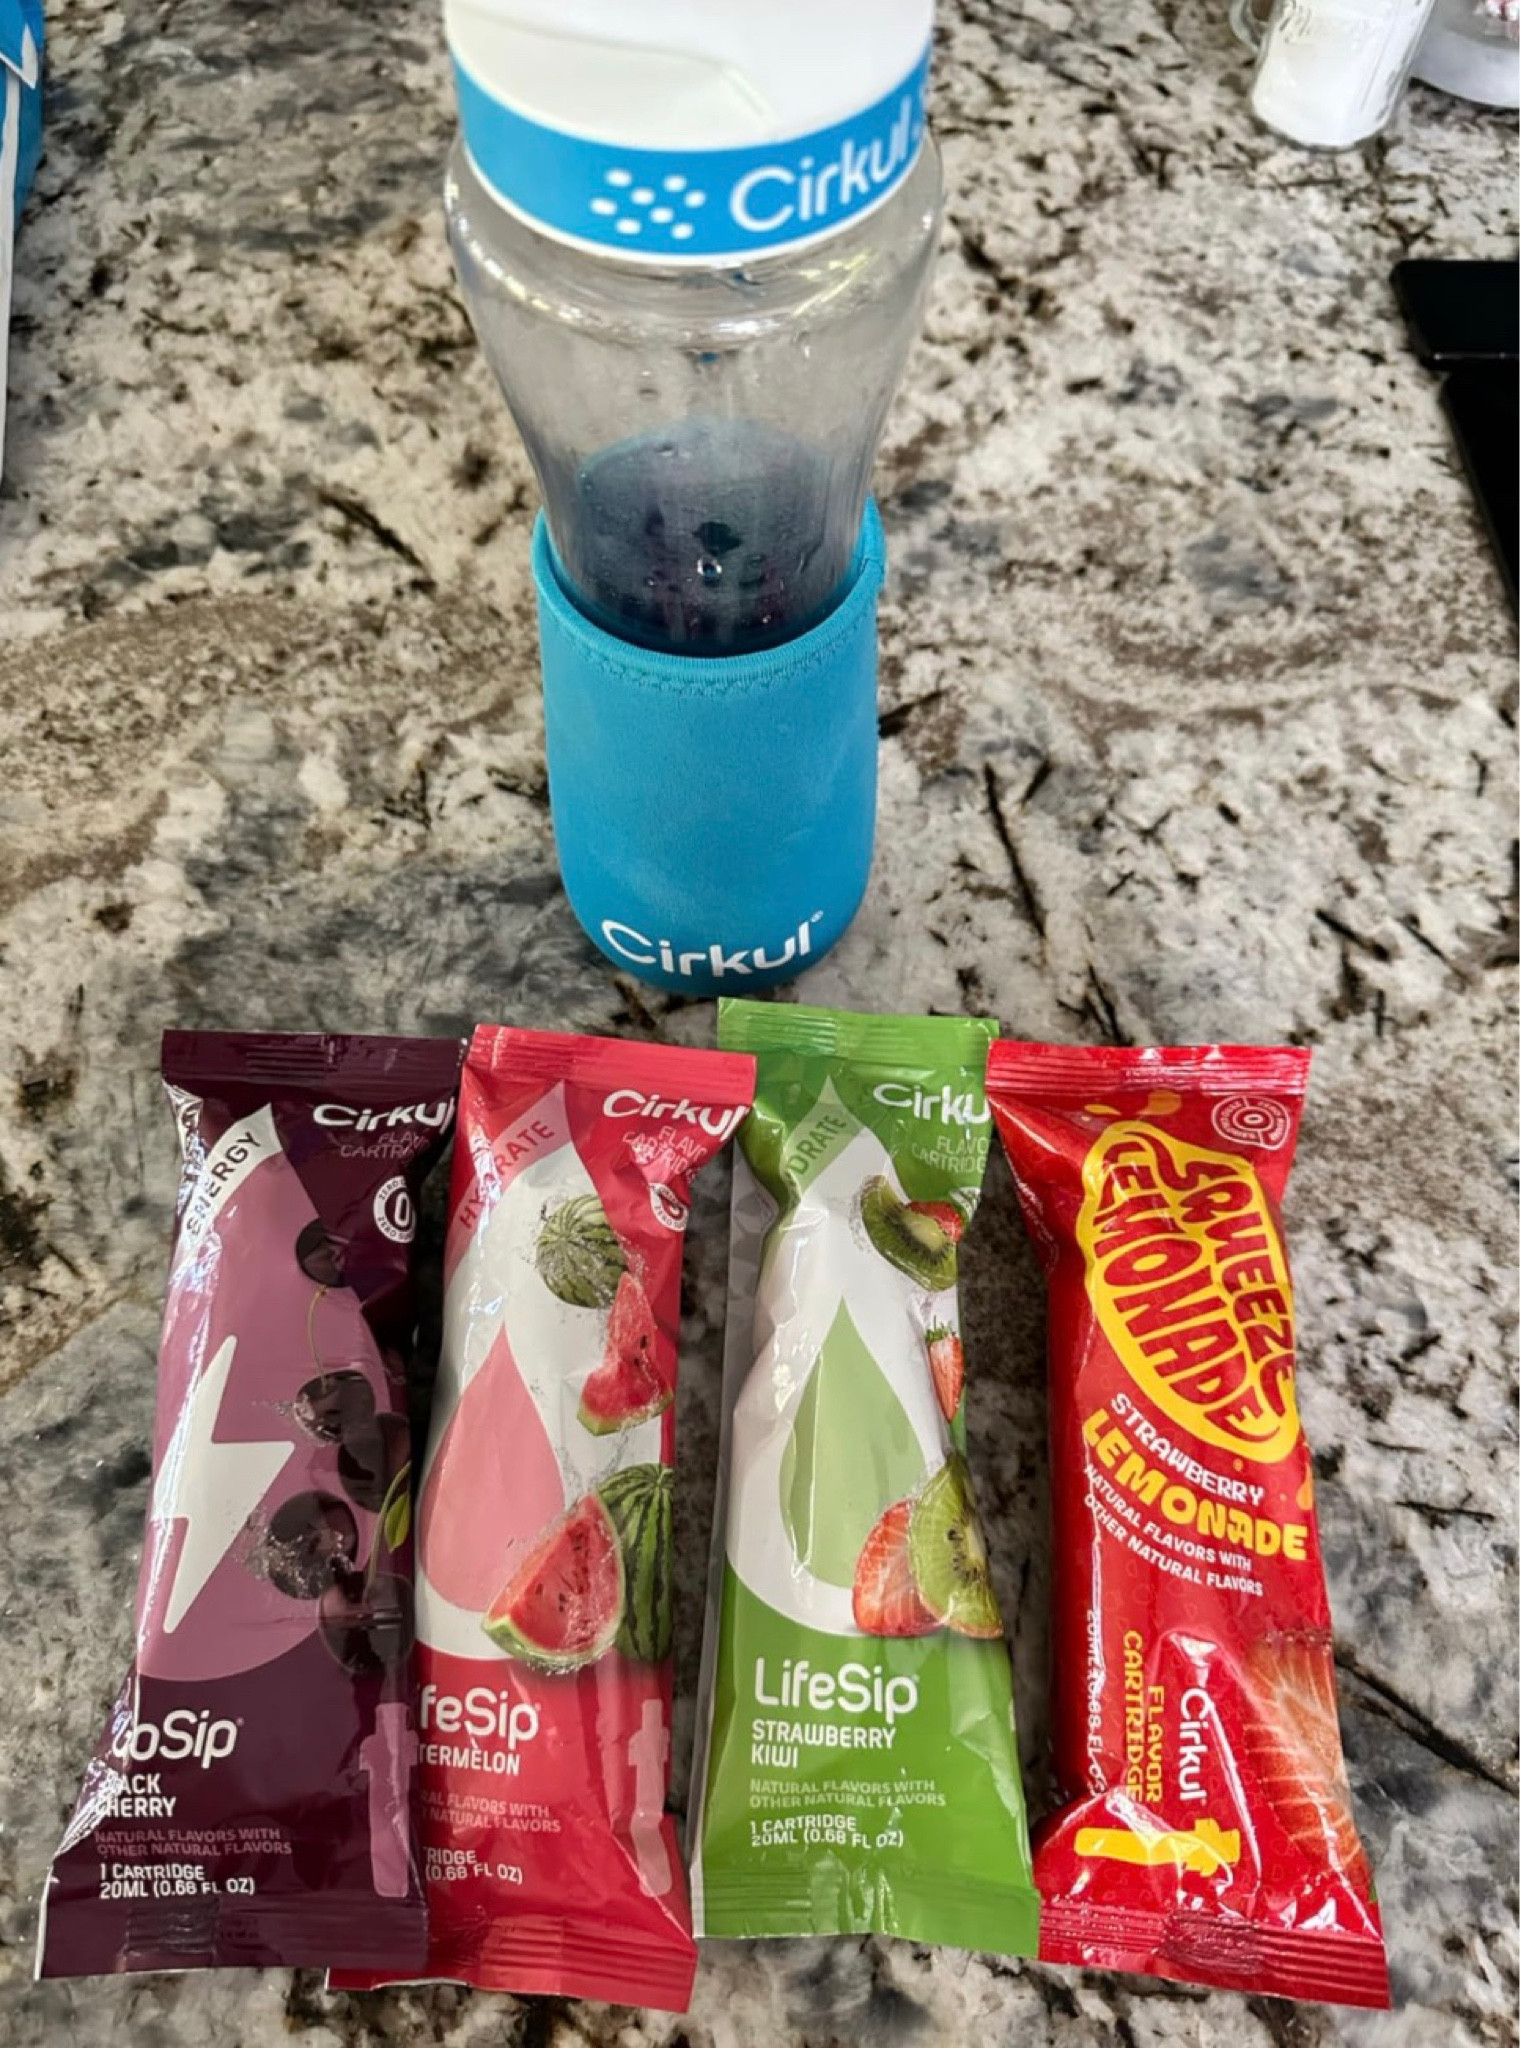 Hydration Starter Kit - Water Bottle + 4 Flavor Cartridges by